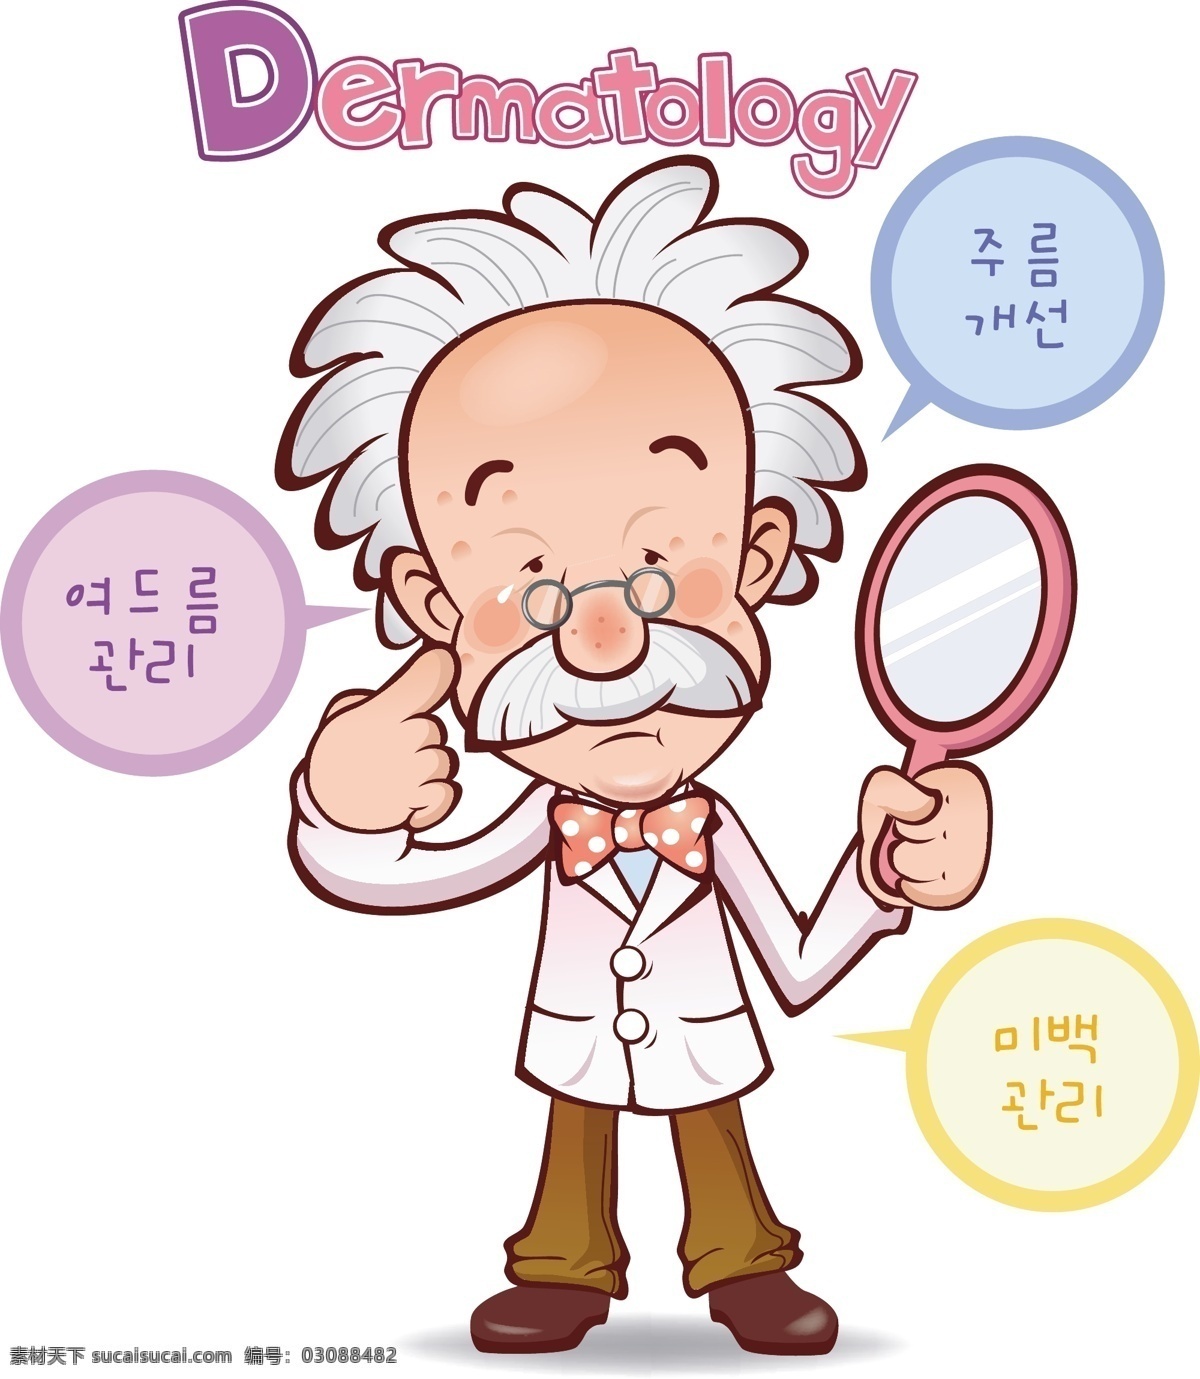 医生 医院 卡通 动漫 插画 动漫动画 动漫人物 放大镜 和谐 十字标志 医护人员 友善 可爱